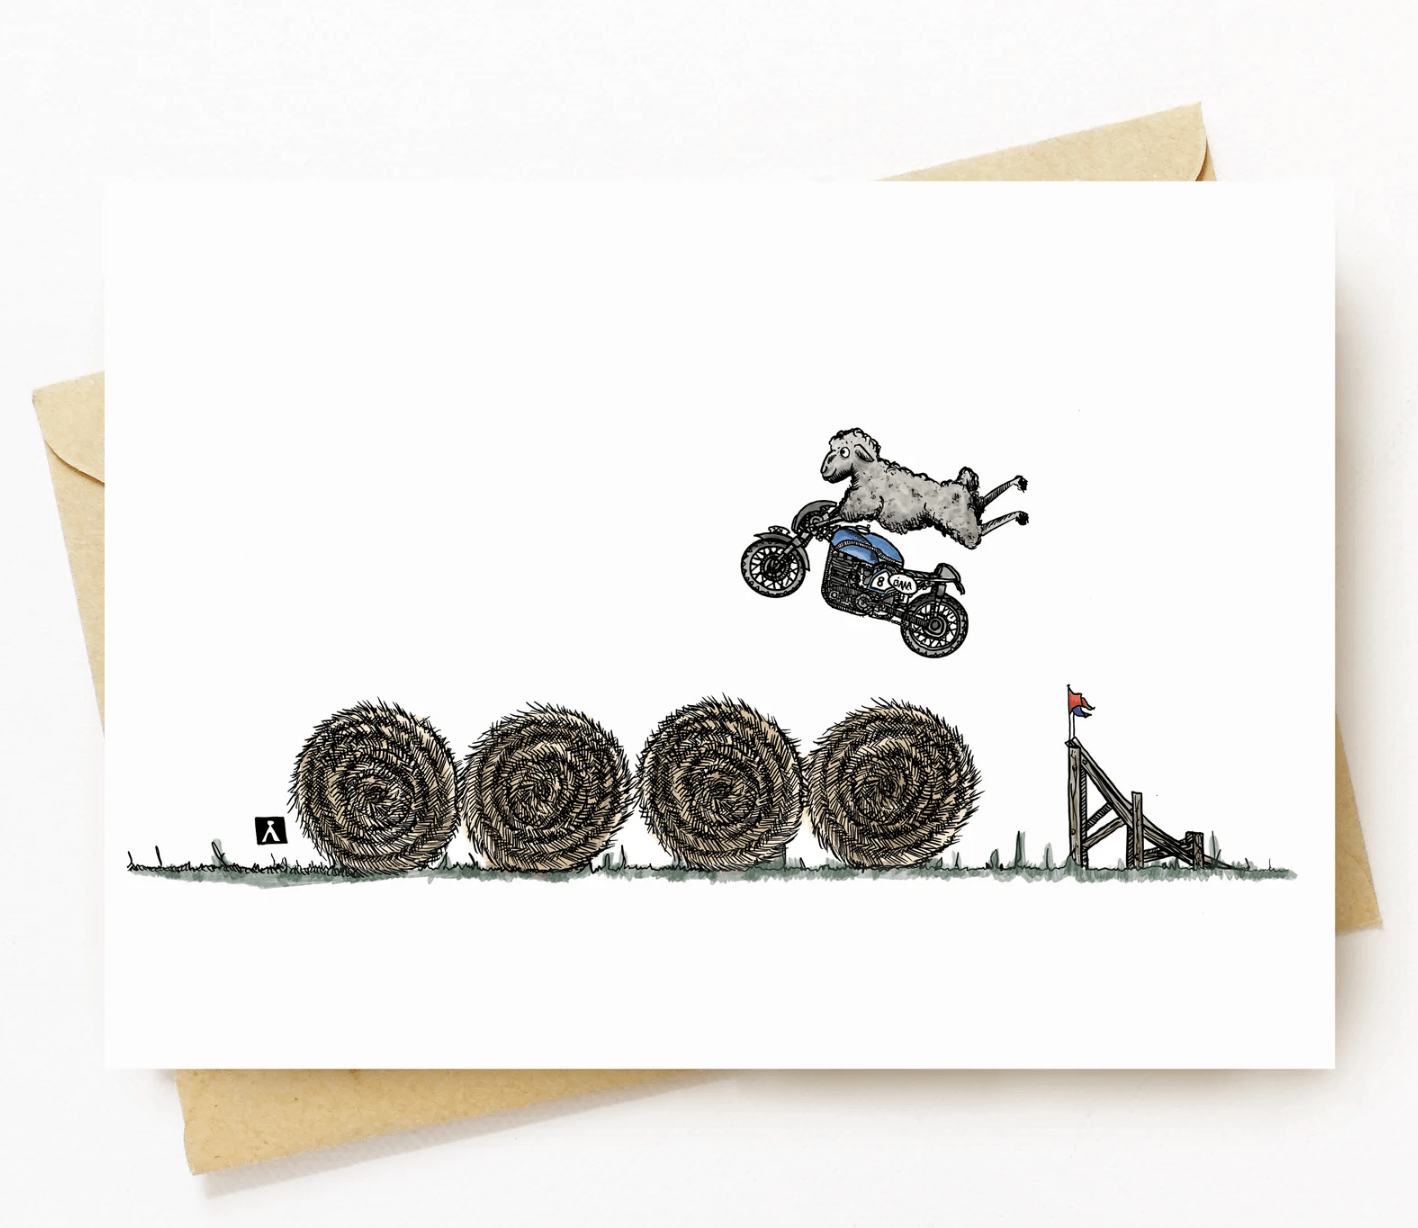 BellavanceInk: Pen & Ink/Watercolor With Stunt Sheep Jumping Hay Bales On Their Cafe Racer Motorcycle 5 x 7 Greeting Card - BellavanceInk